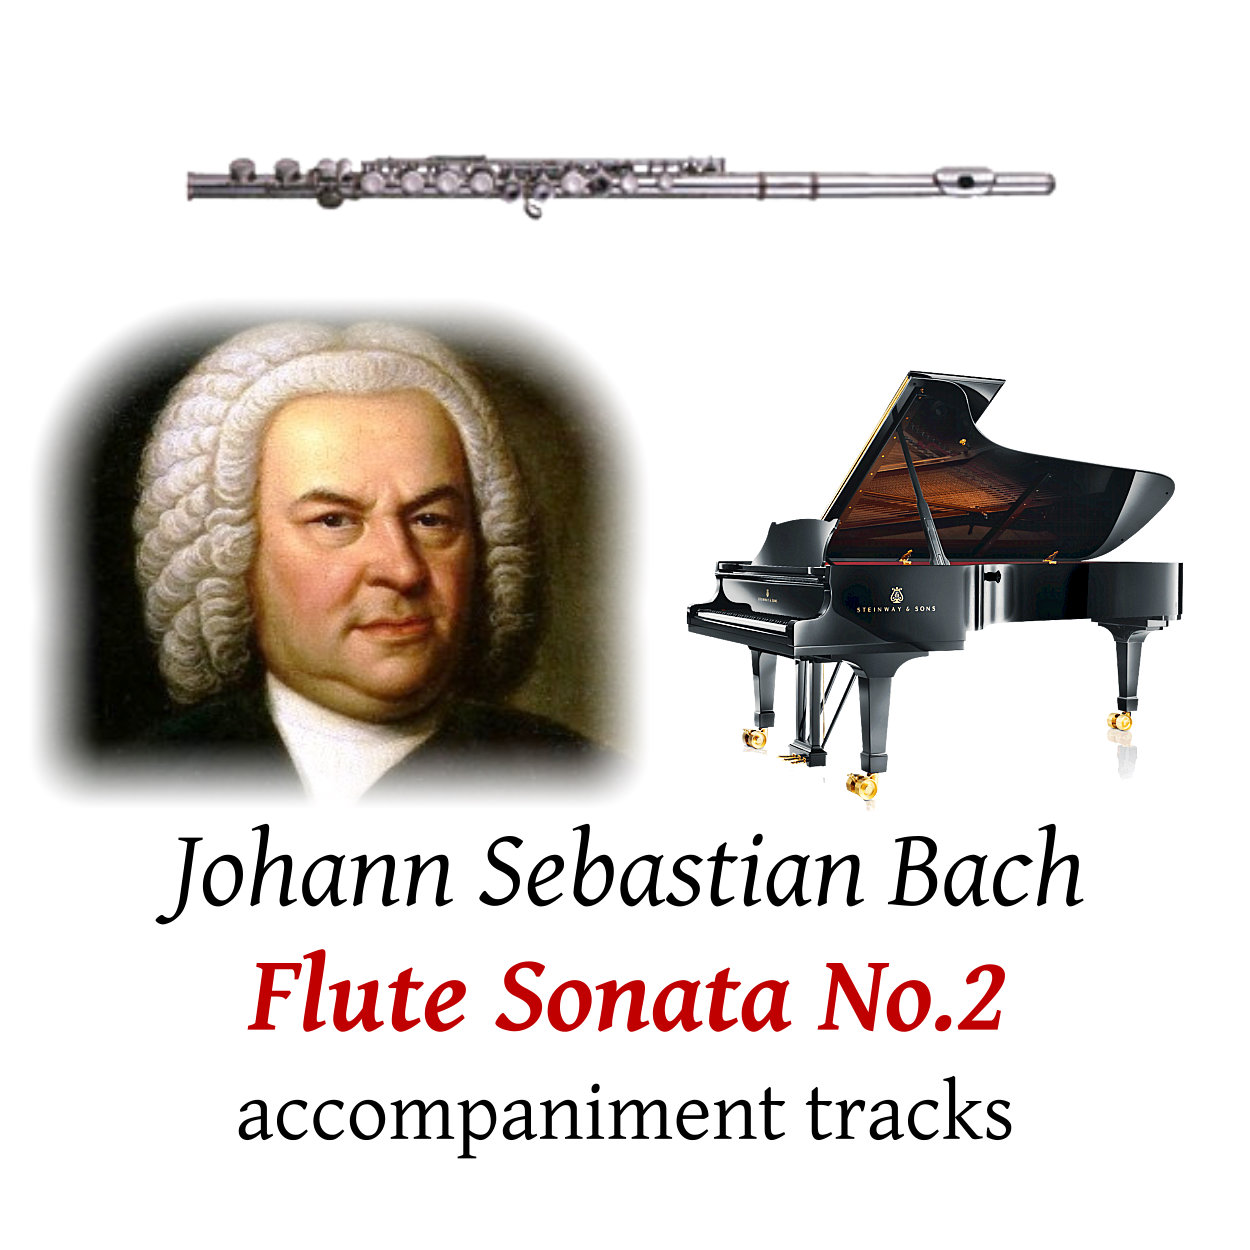 Bach: Flute Sonata No.2 in Eb major, BWV 1031